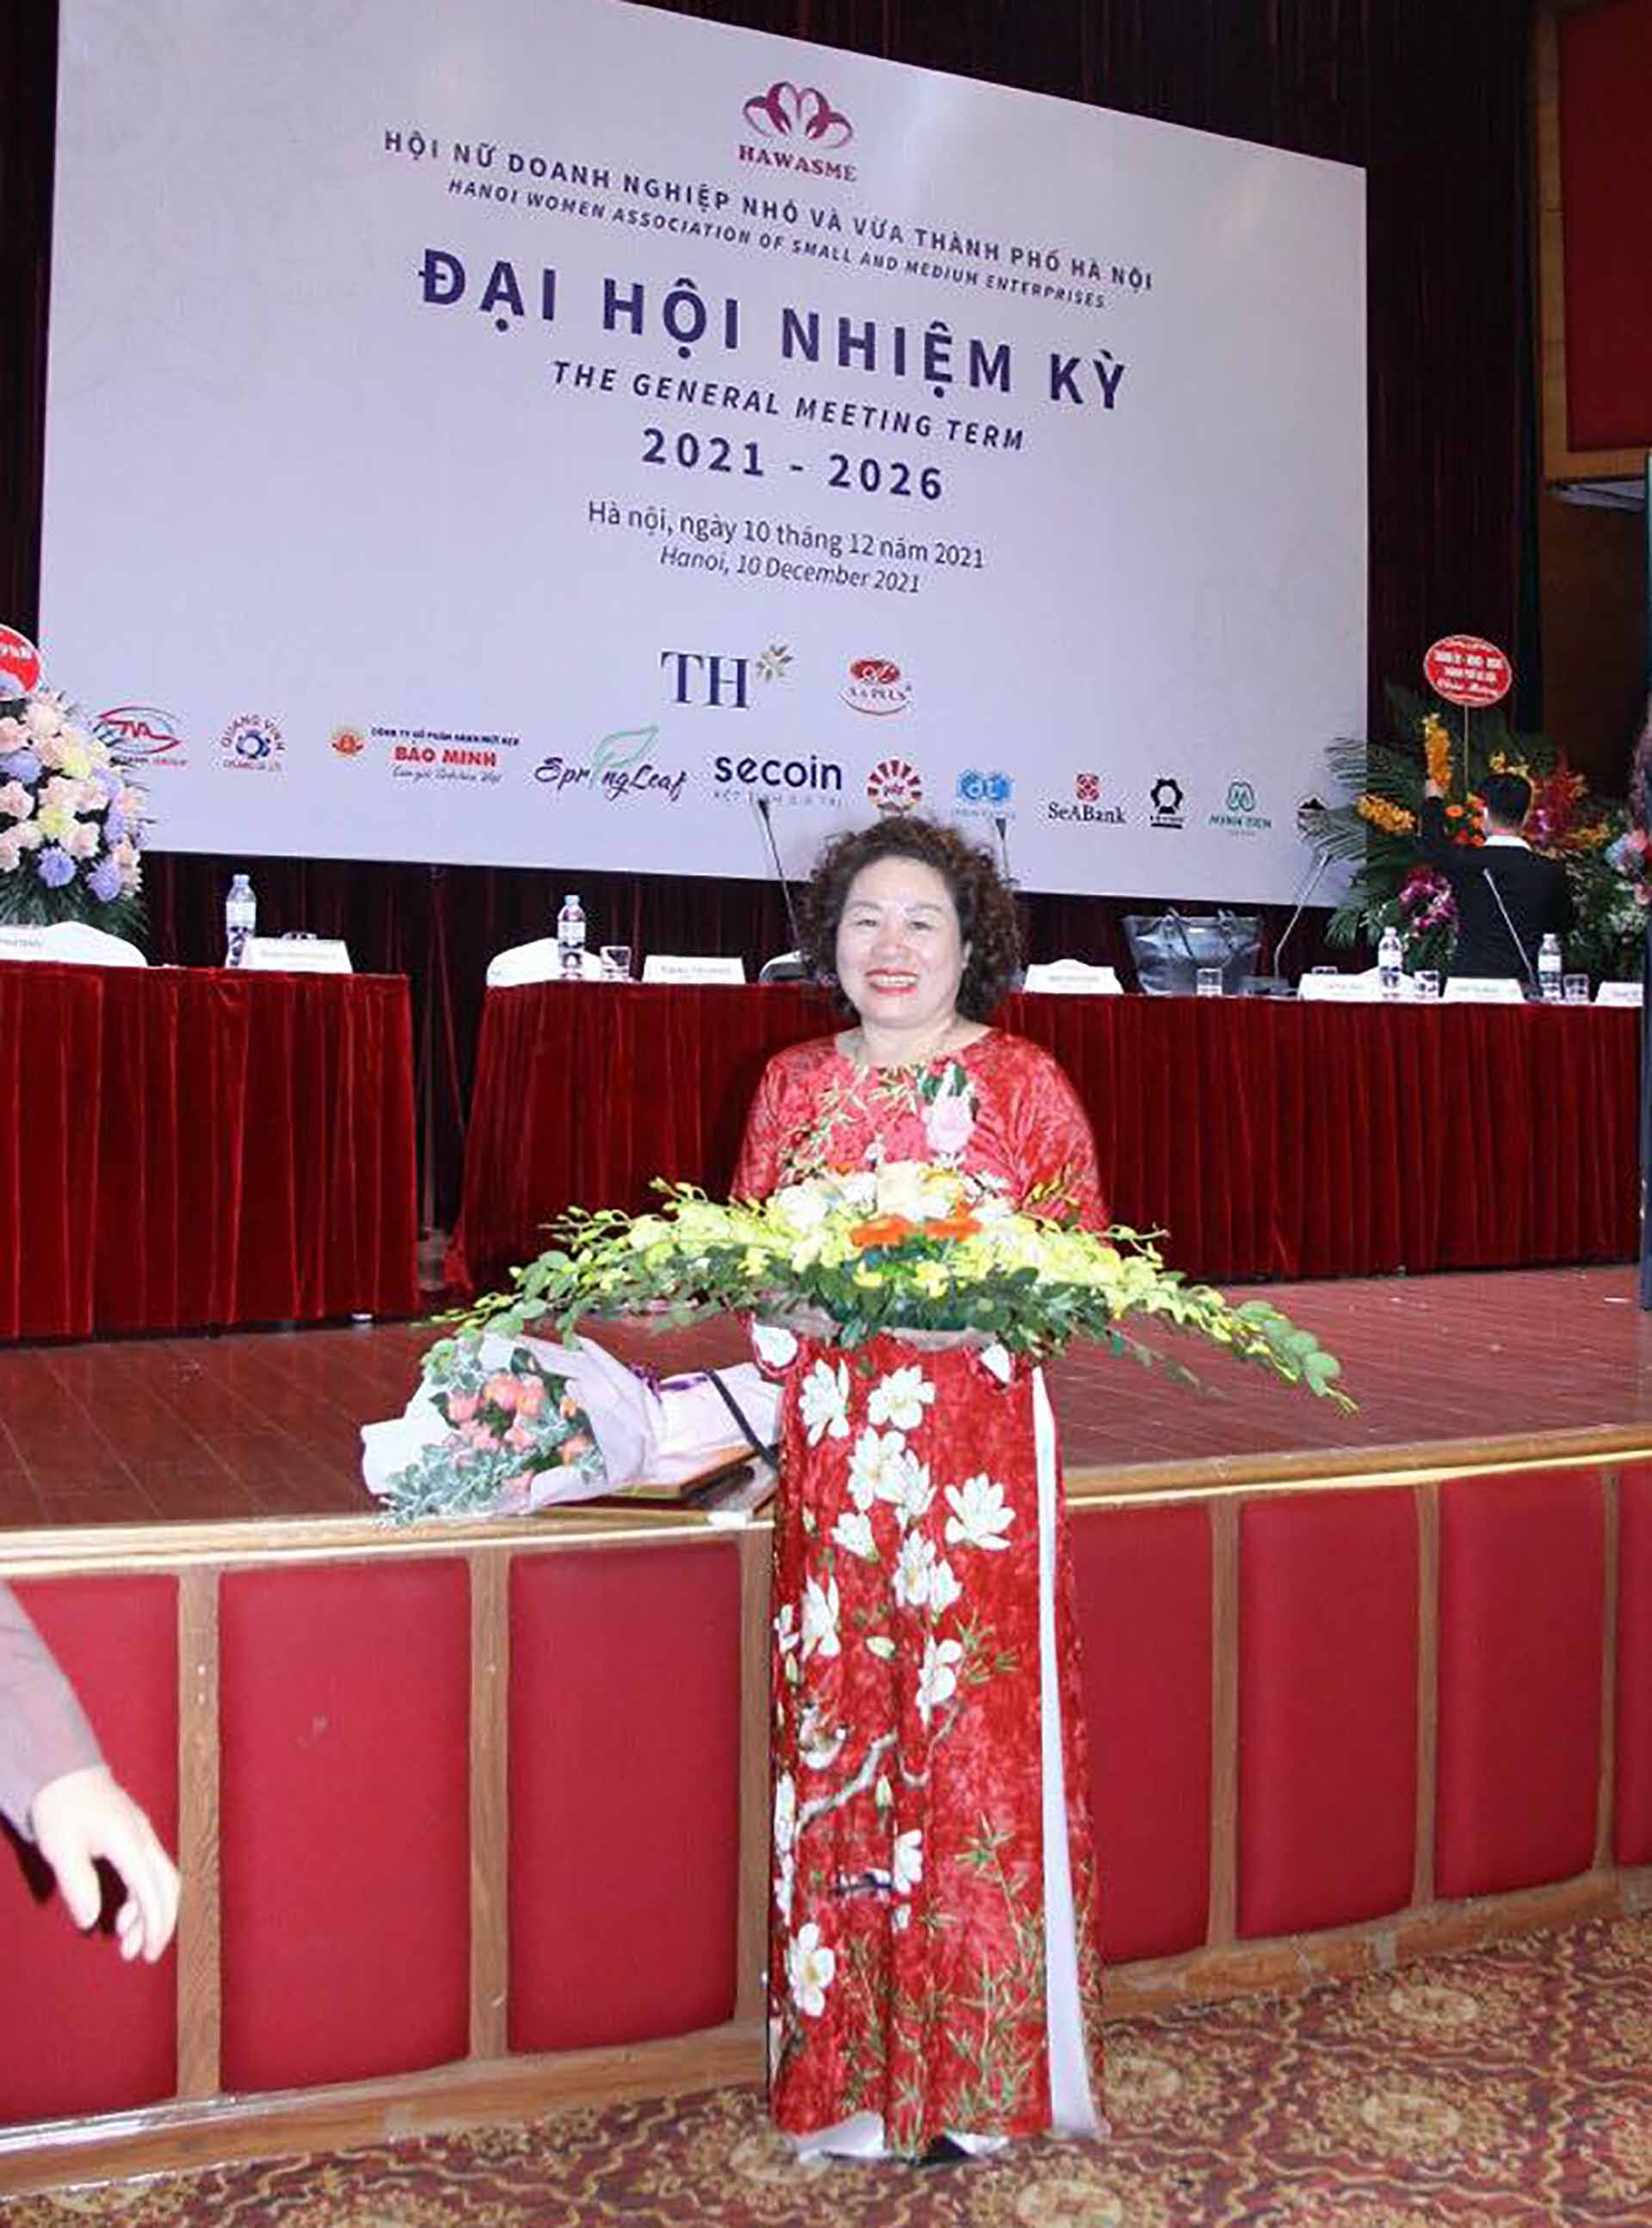 Bà Dương Thị Hà tham gia, đóng góp tích cực vào Hội nữ doanh nghiệp nhỏ và vừa thành phố Hà Nội.